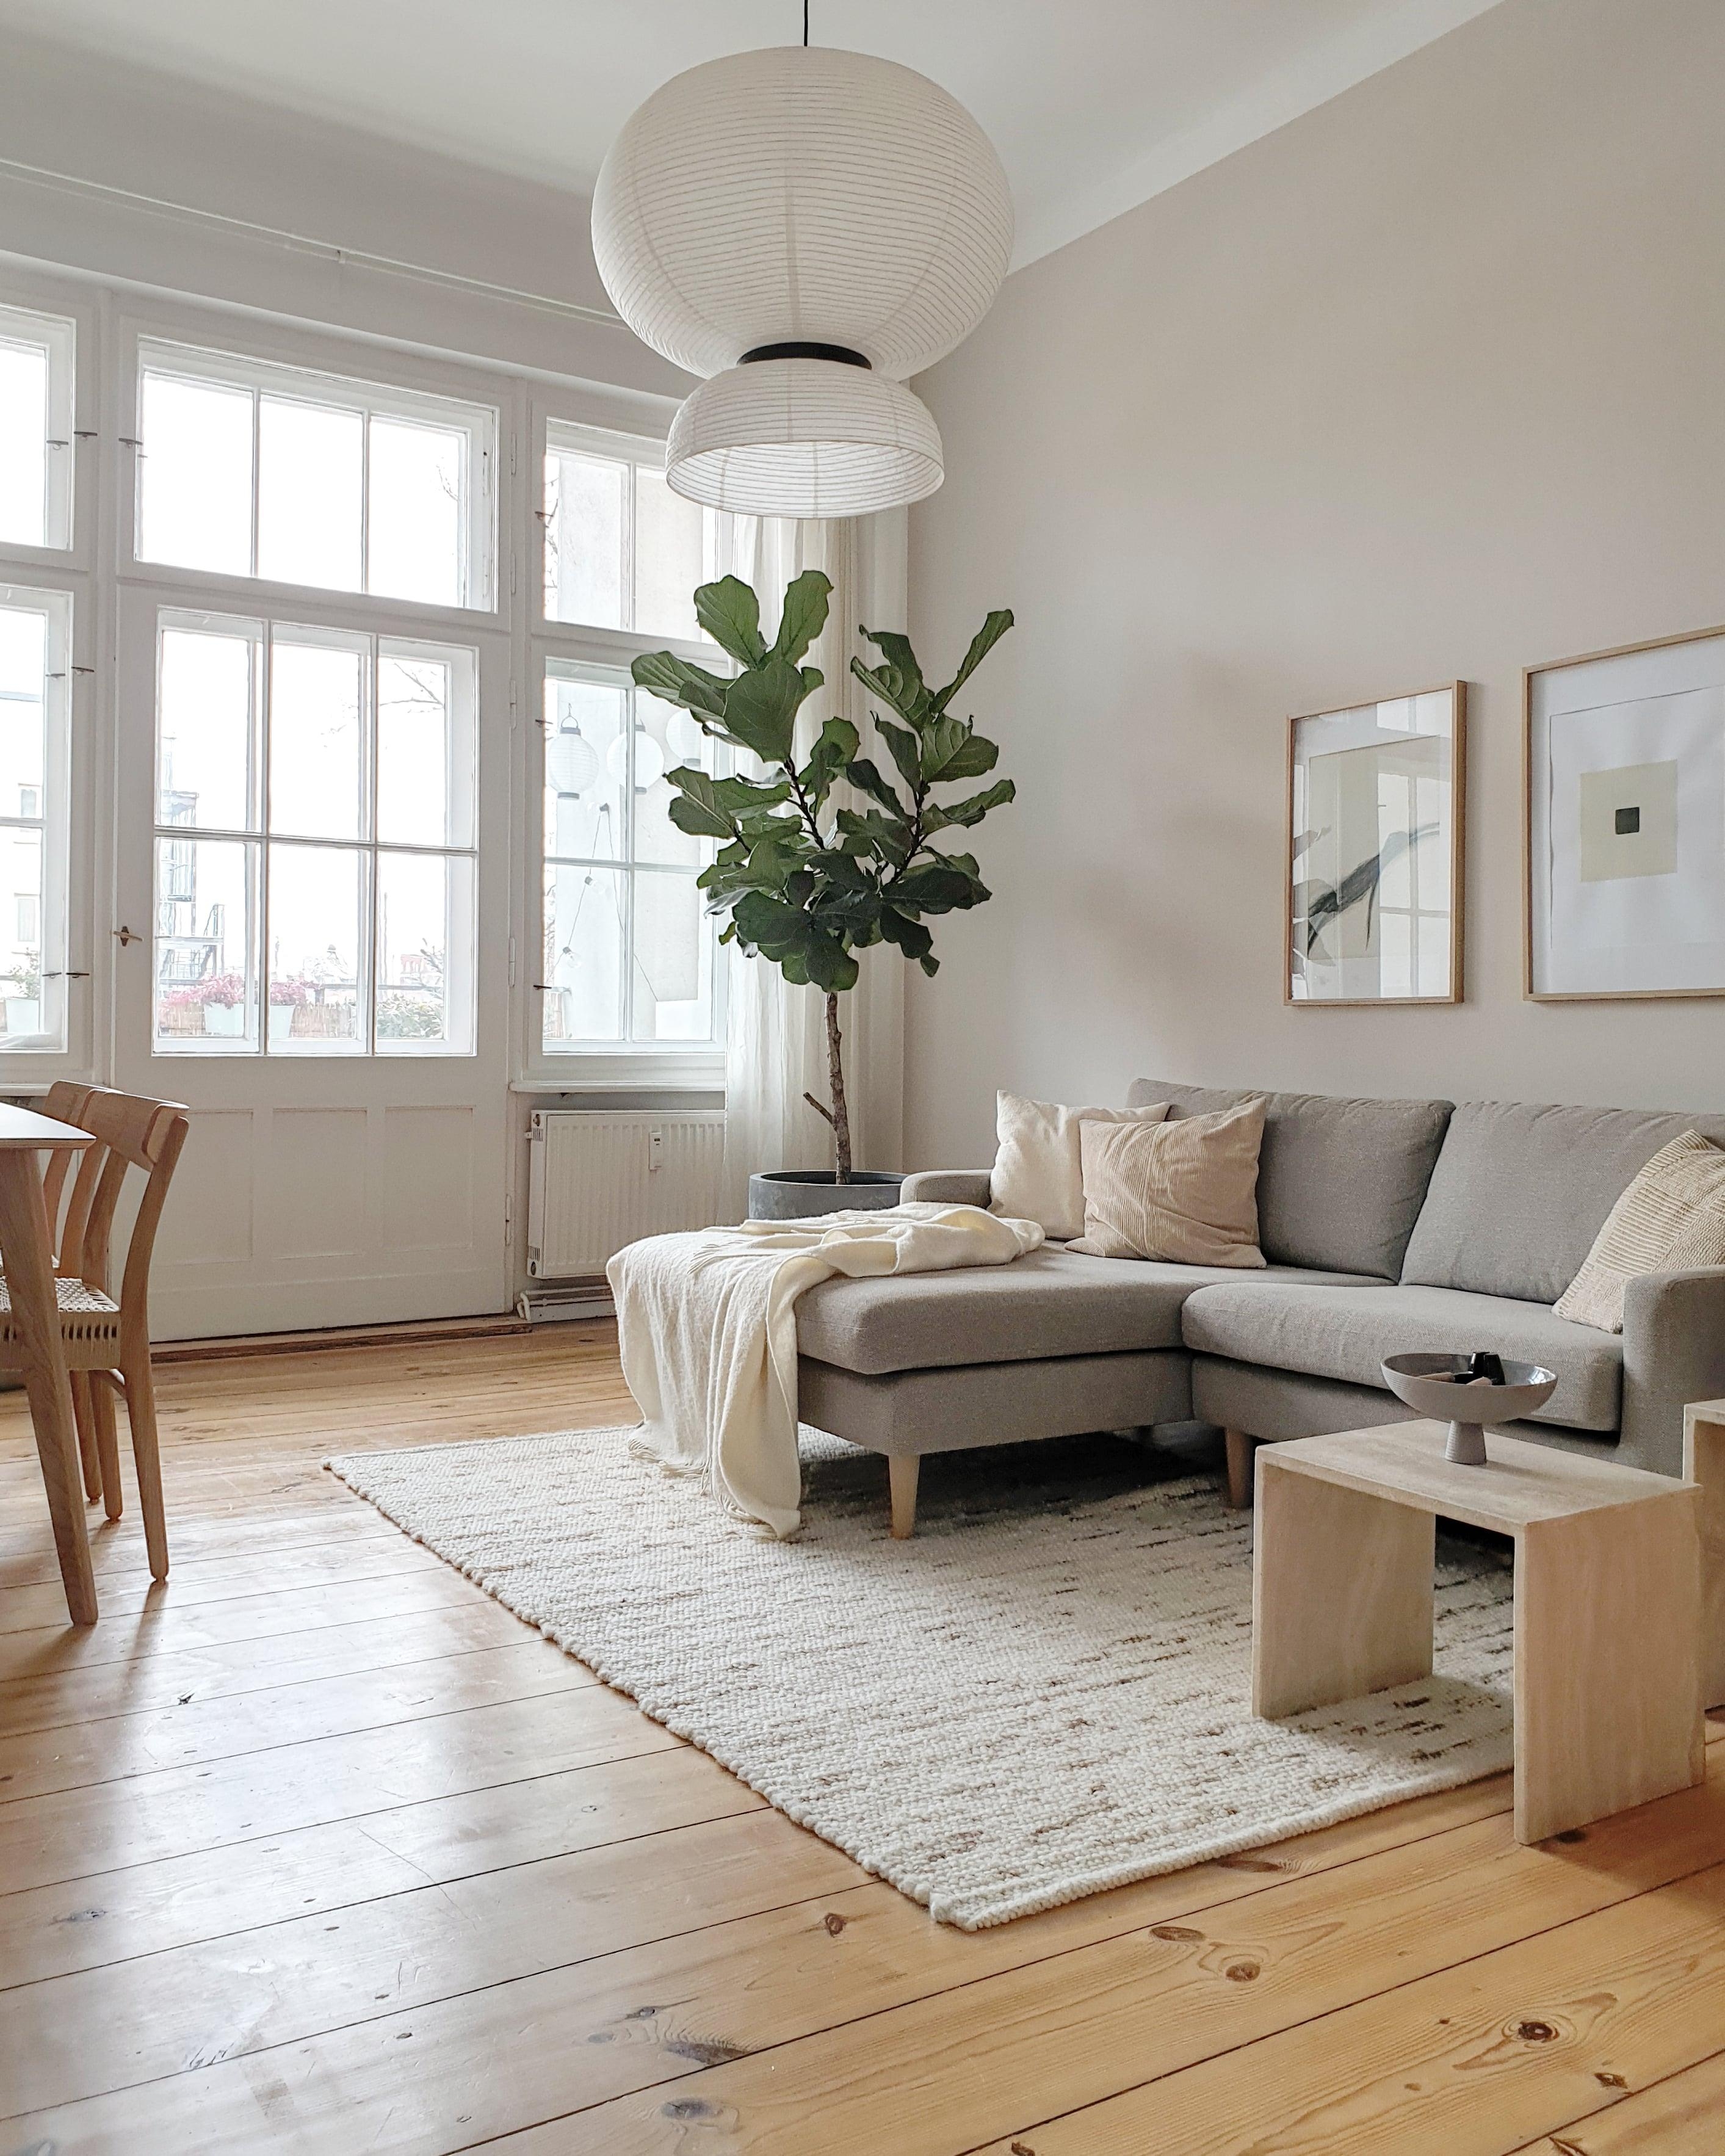 #wohnzimmer #sofa #ficus #geigenfeige #dielenboden #altbau #altbauliebe #cozy #hygge #skandinavisch #minimalistisch